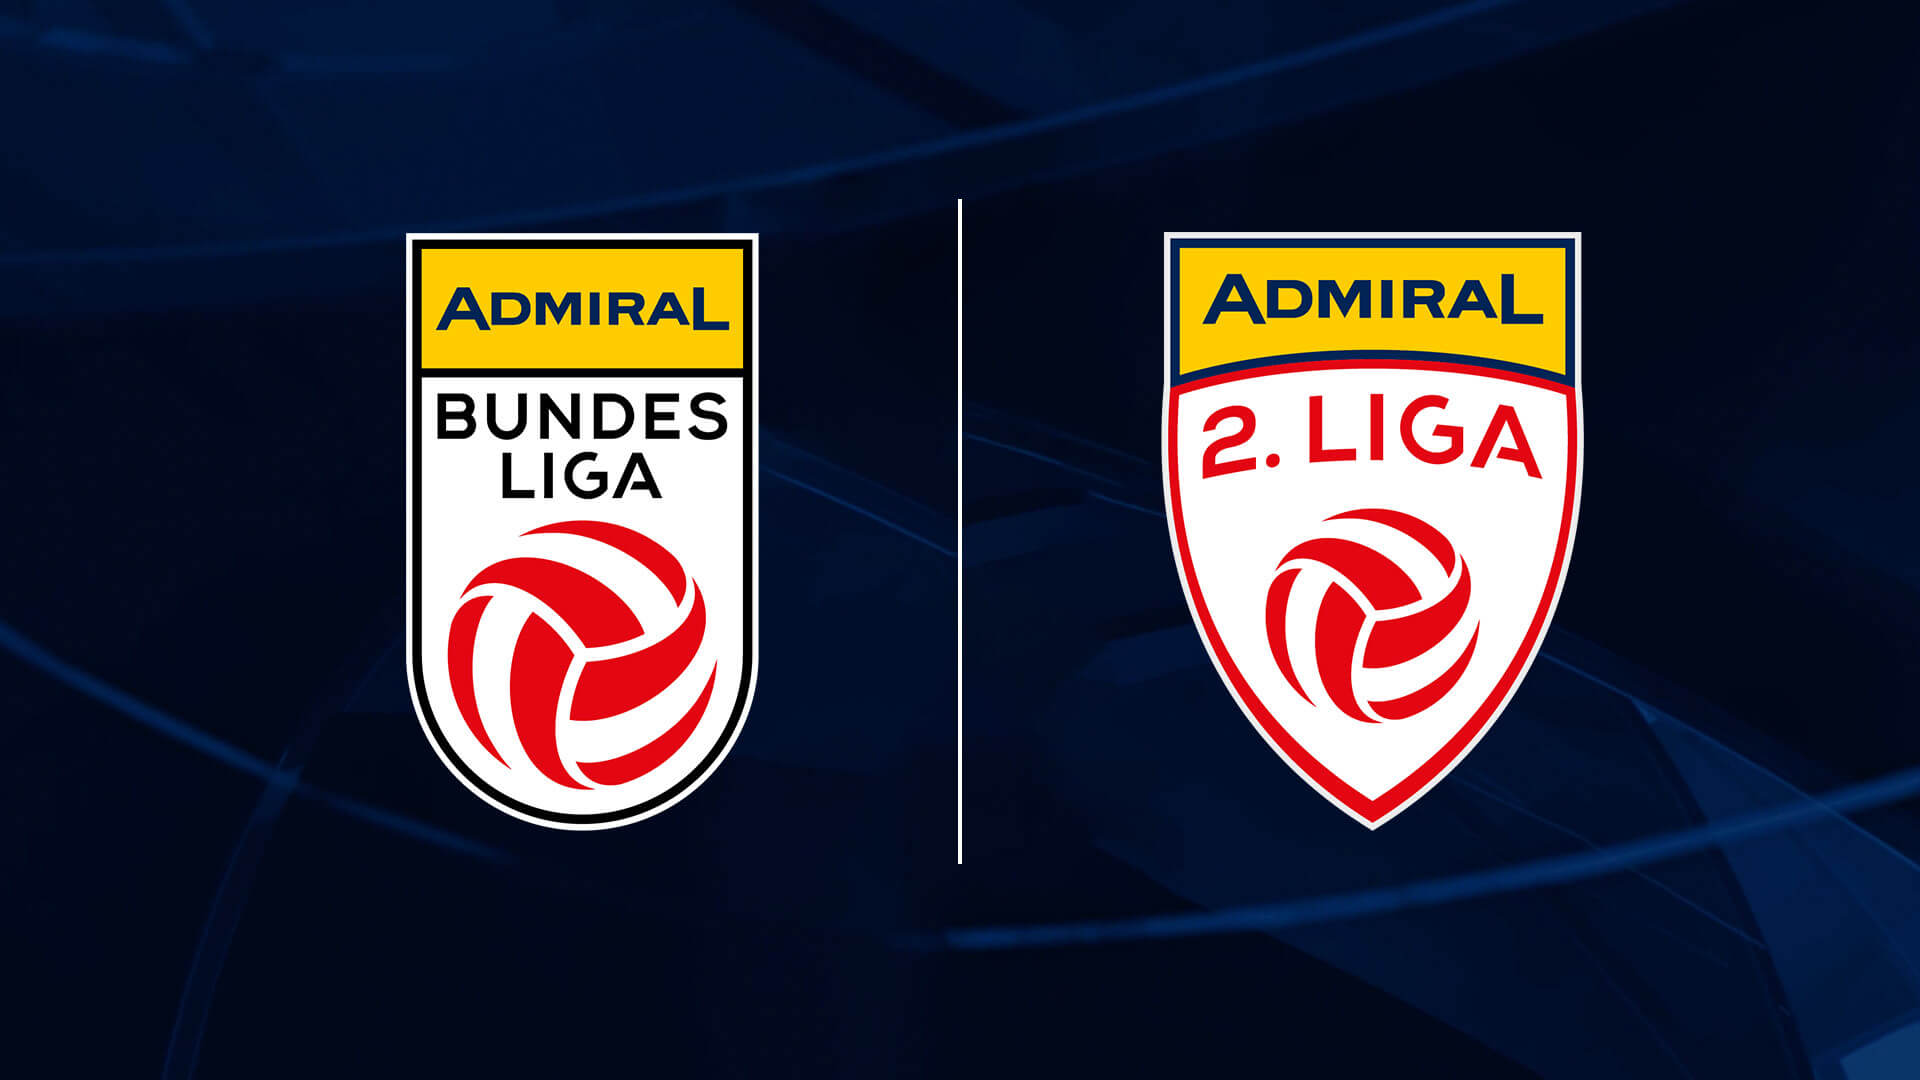 ADMIRAL Bundesliga - ADMIRAL 2. Liga